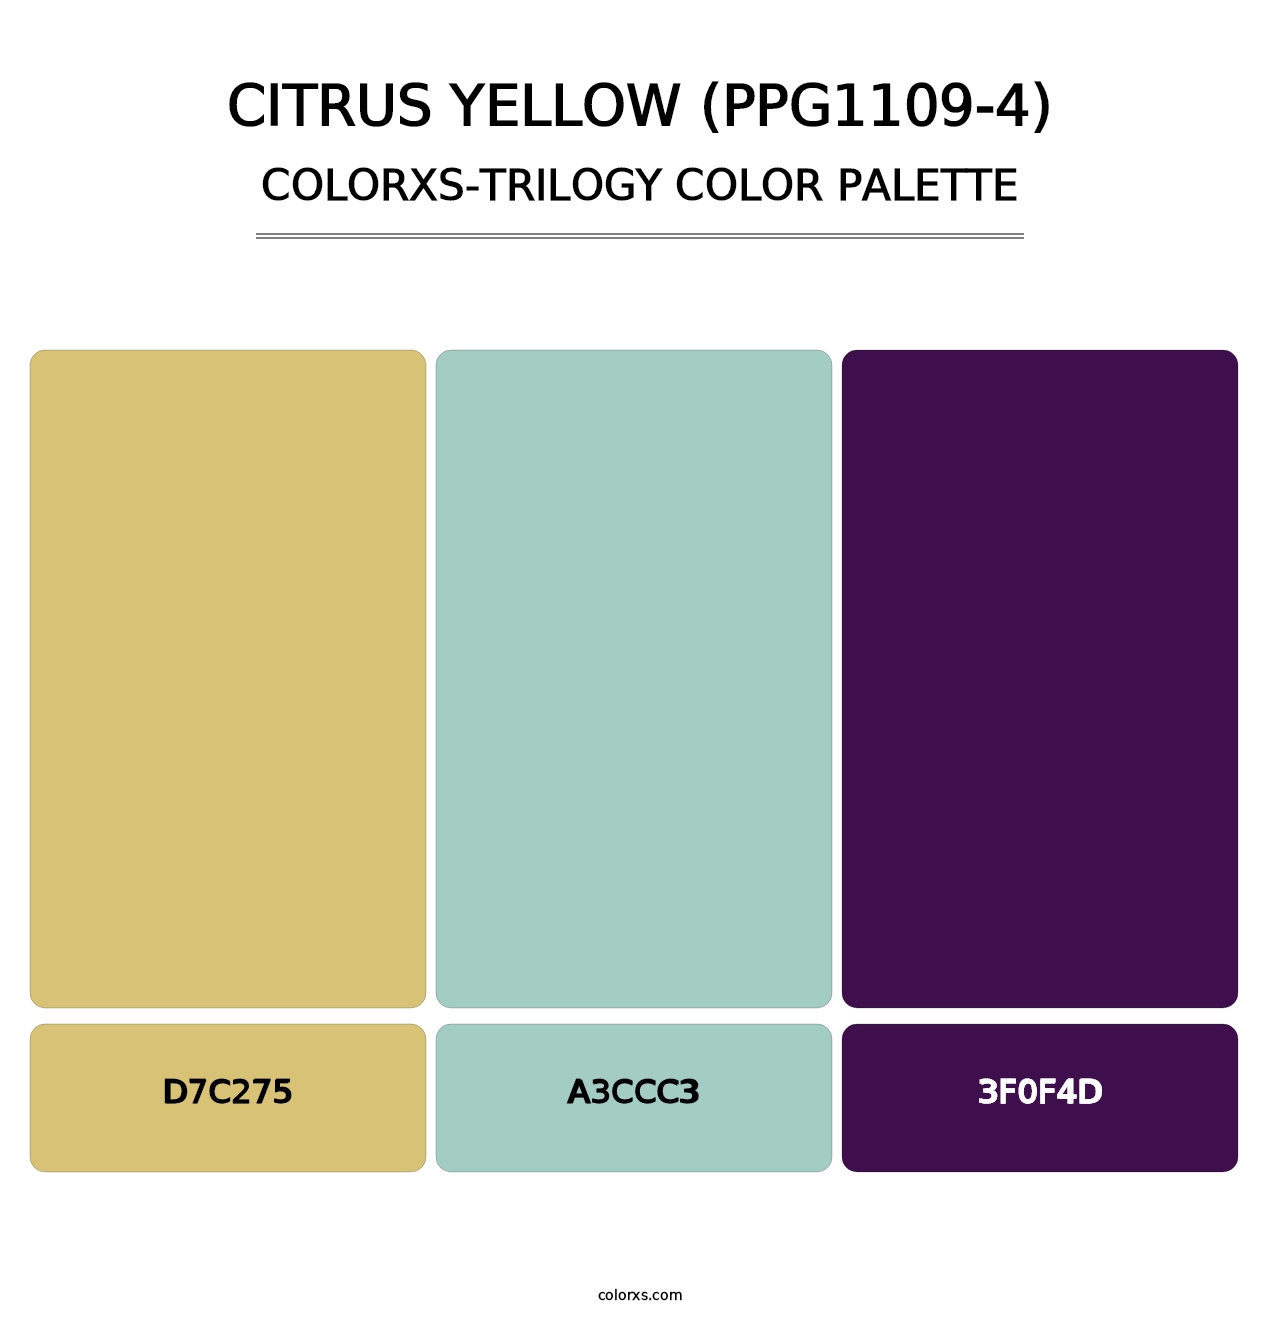 Citrus Yellow (PPG1109-4) - Colorxs Trilogy Palette